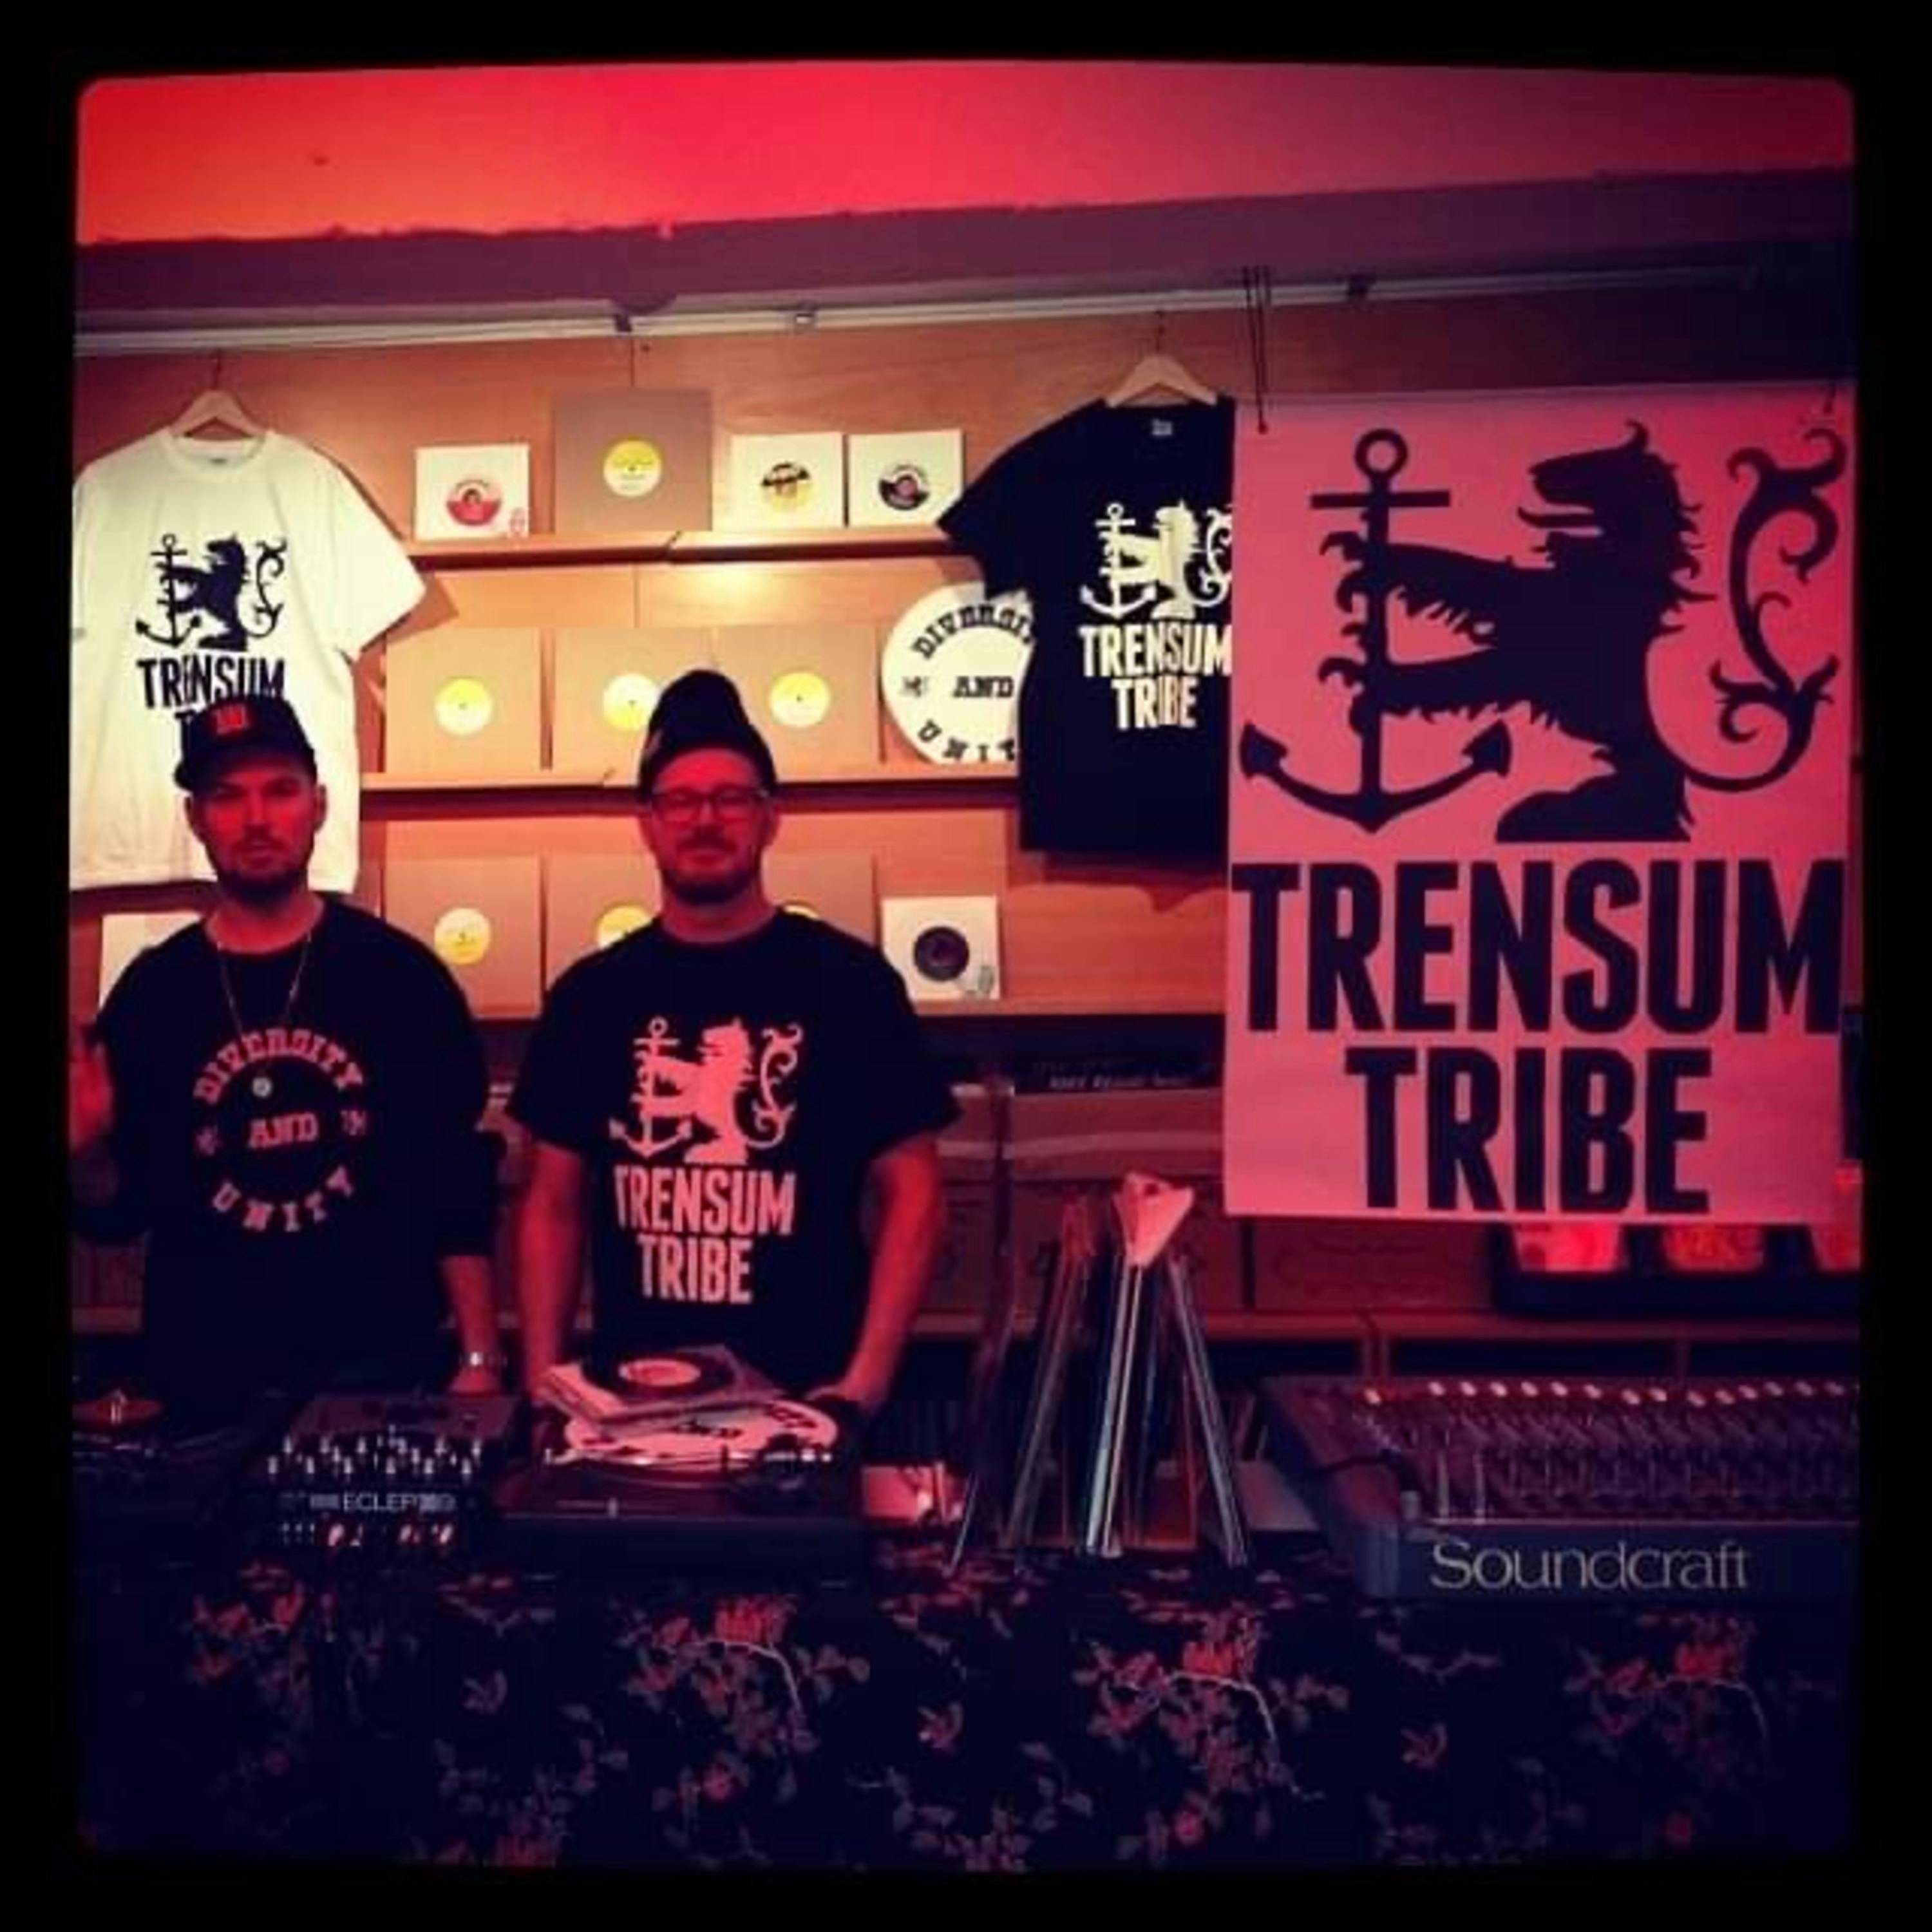 Trensum Tribe